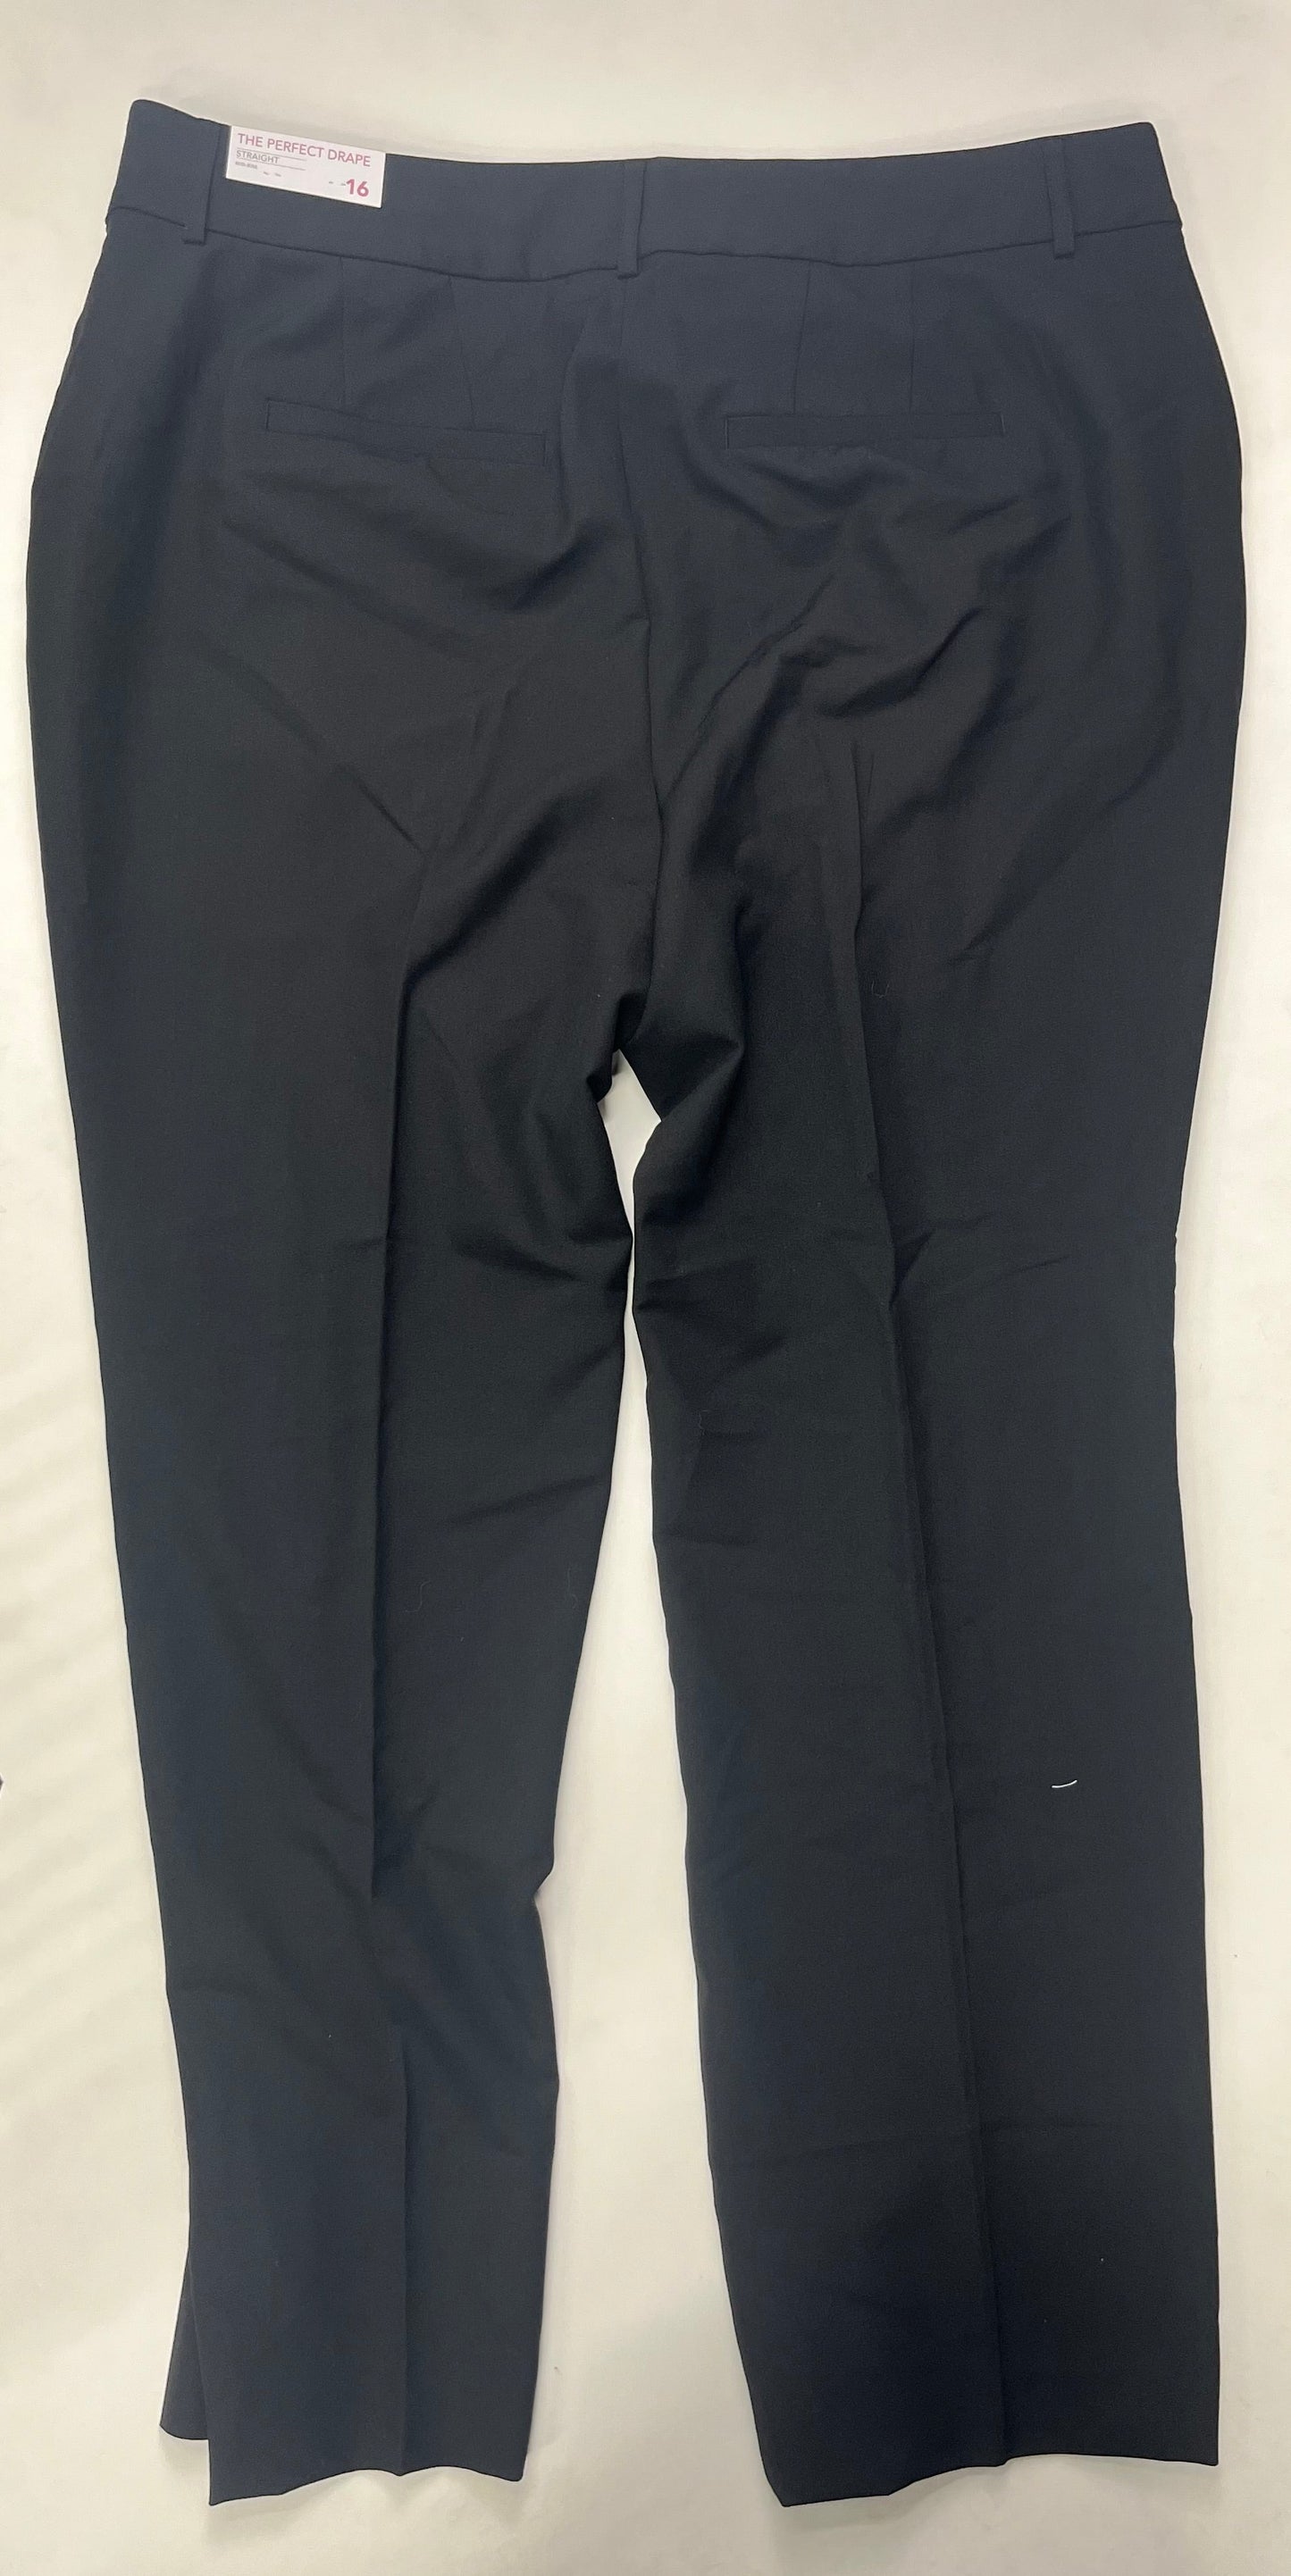 Black Pants Work/dress Lane Bryant, Size 16